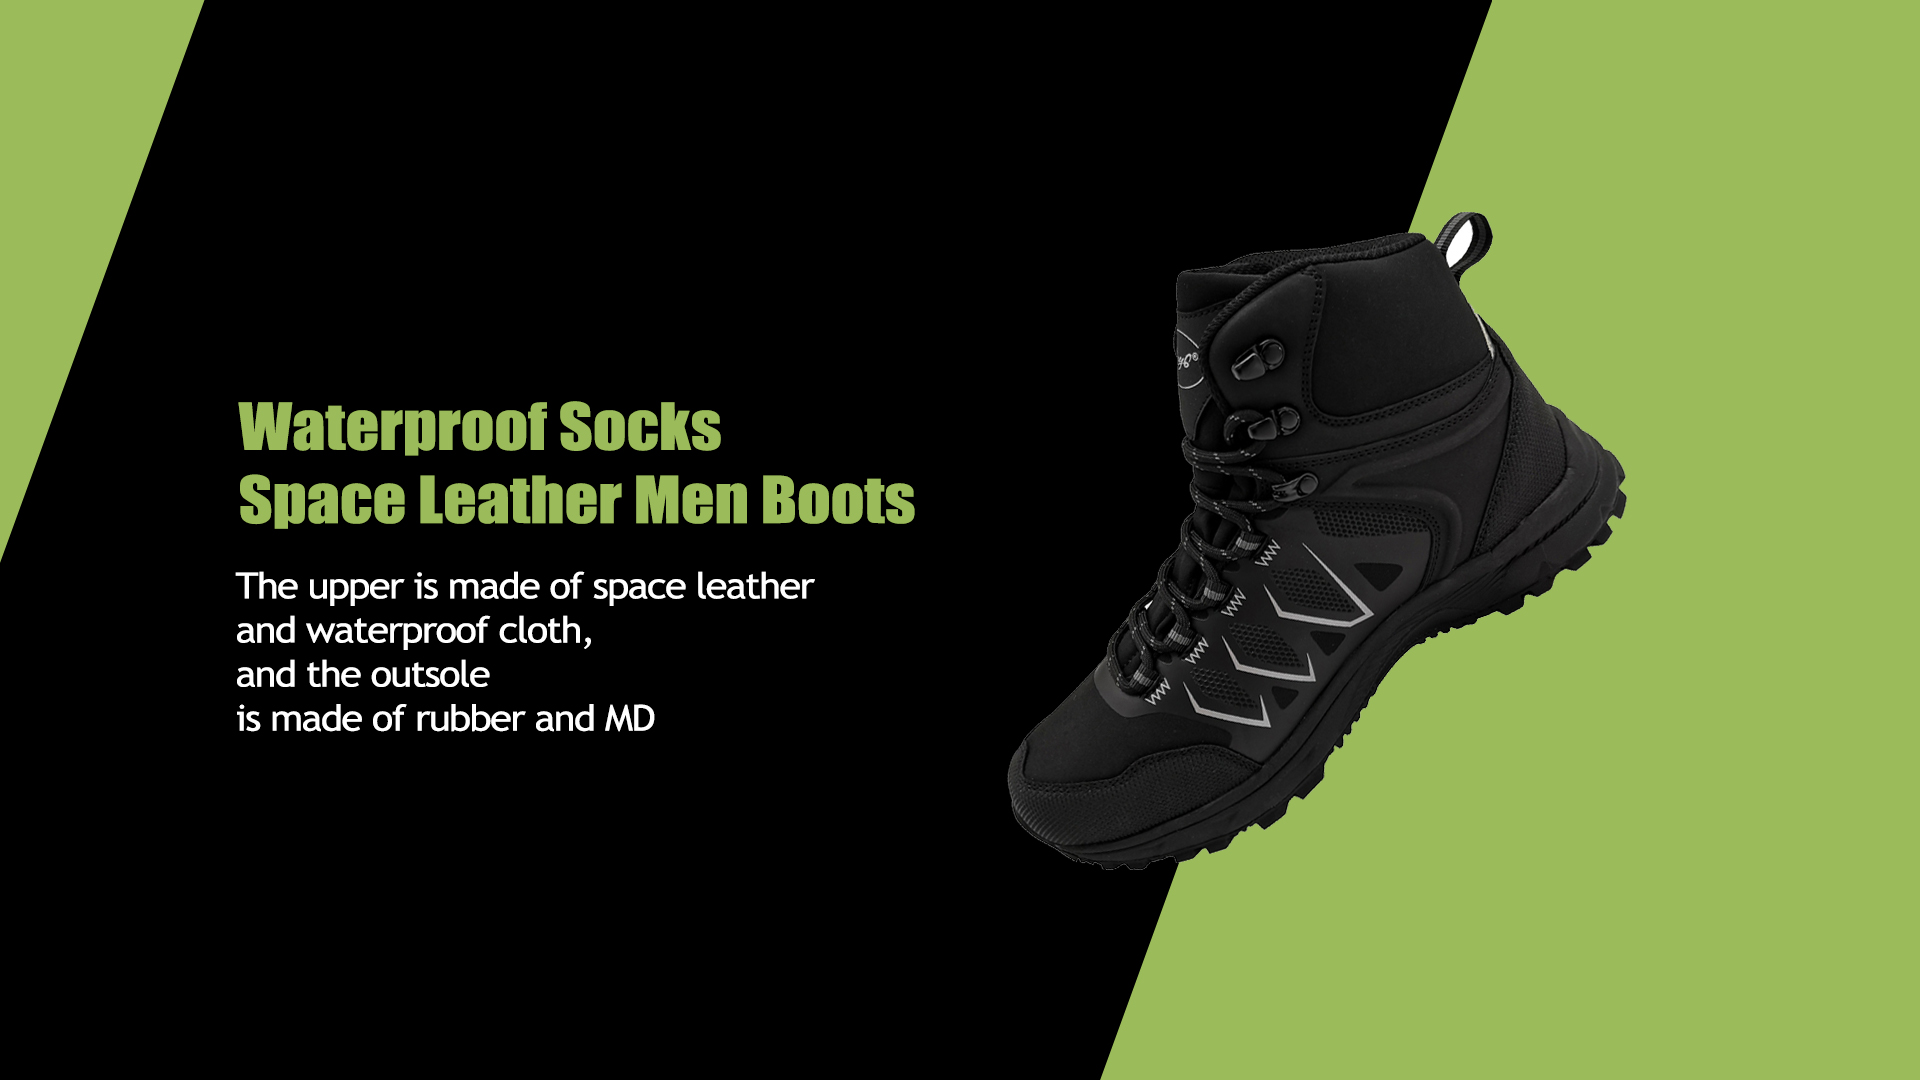 Waterproof Socks Space Leather Men Boots